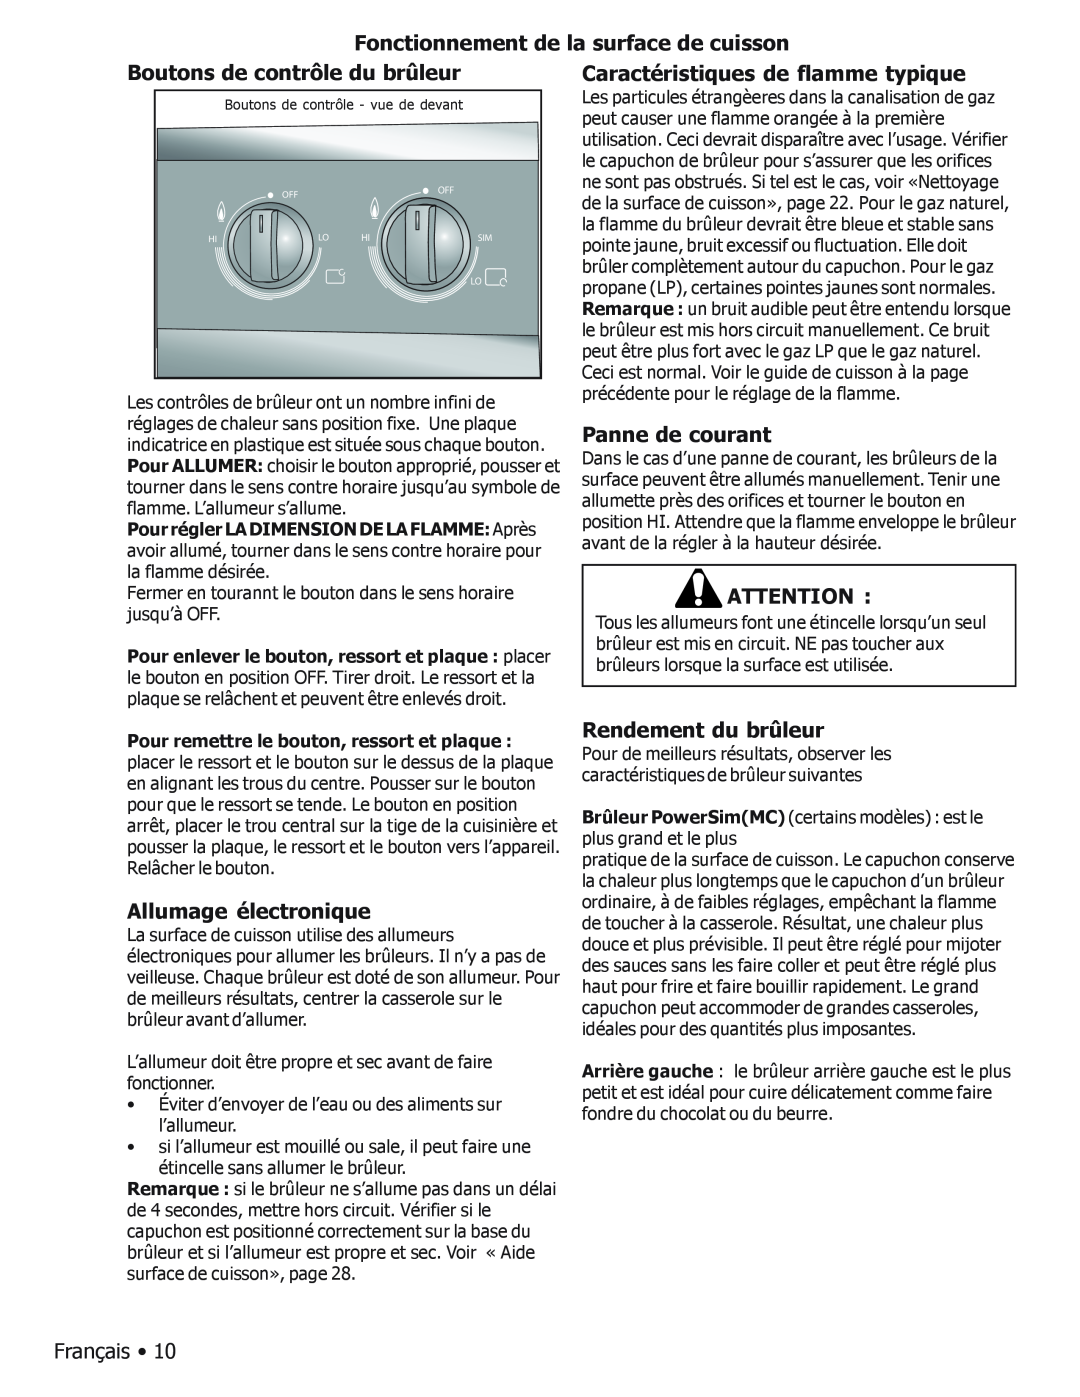 Bosch Appliances BOSCH GAS FREE-STANDING CONVECTION RANGE manual Fonctionnement de Boutons de contrôle du brûleur 